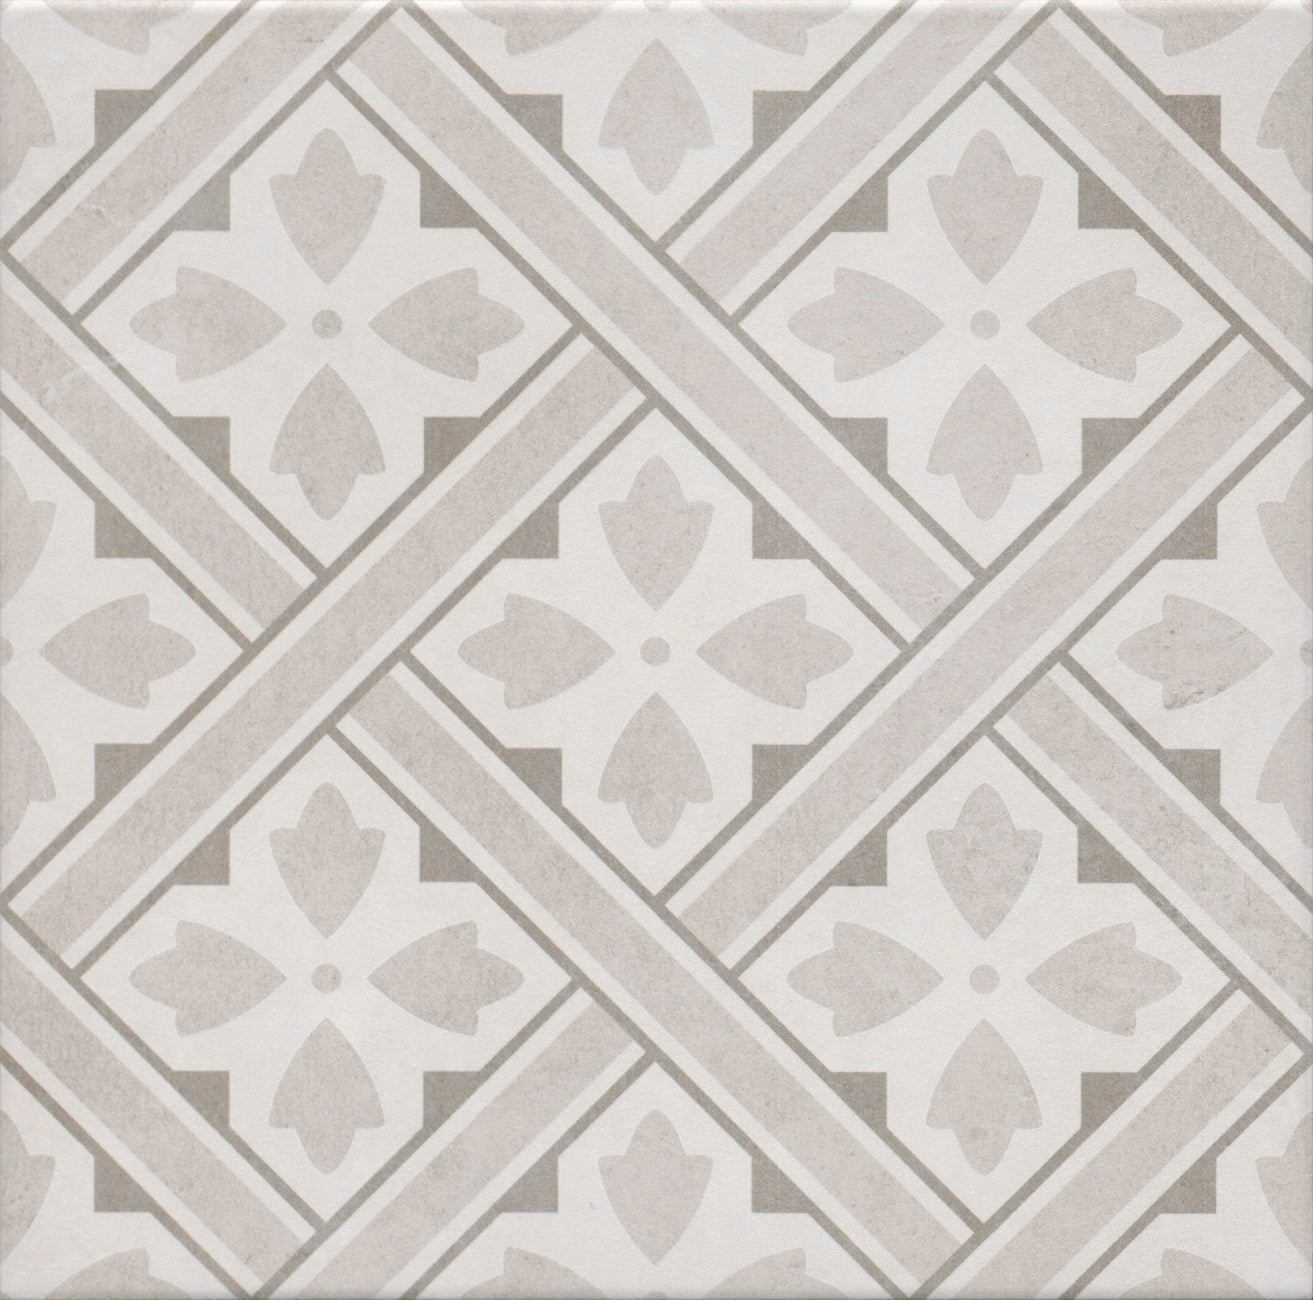 Dorcester Beige Porcelain Floor Tile - 33 x 33cm